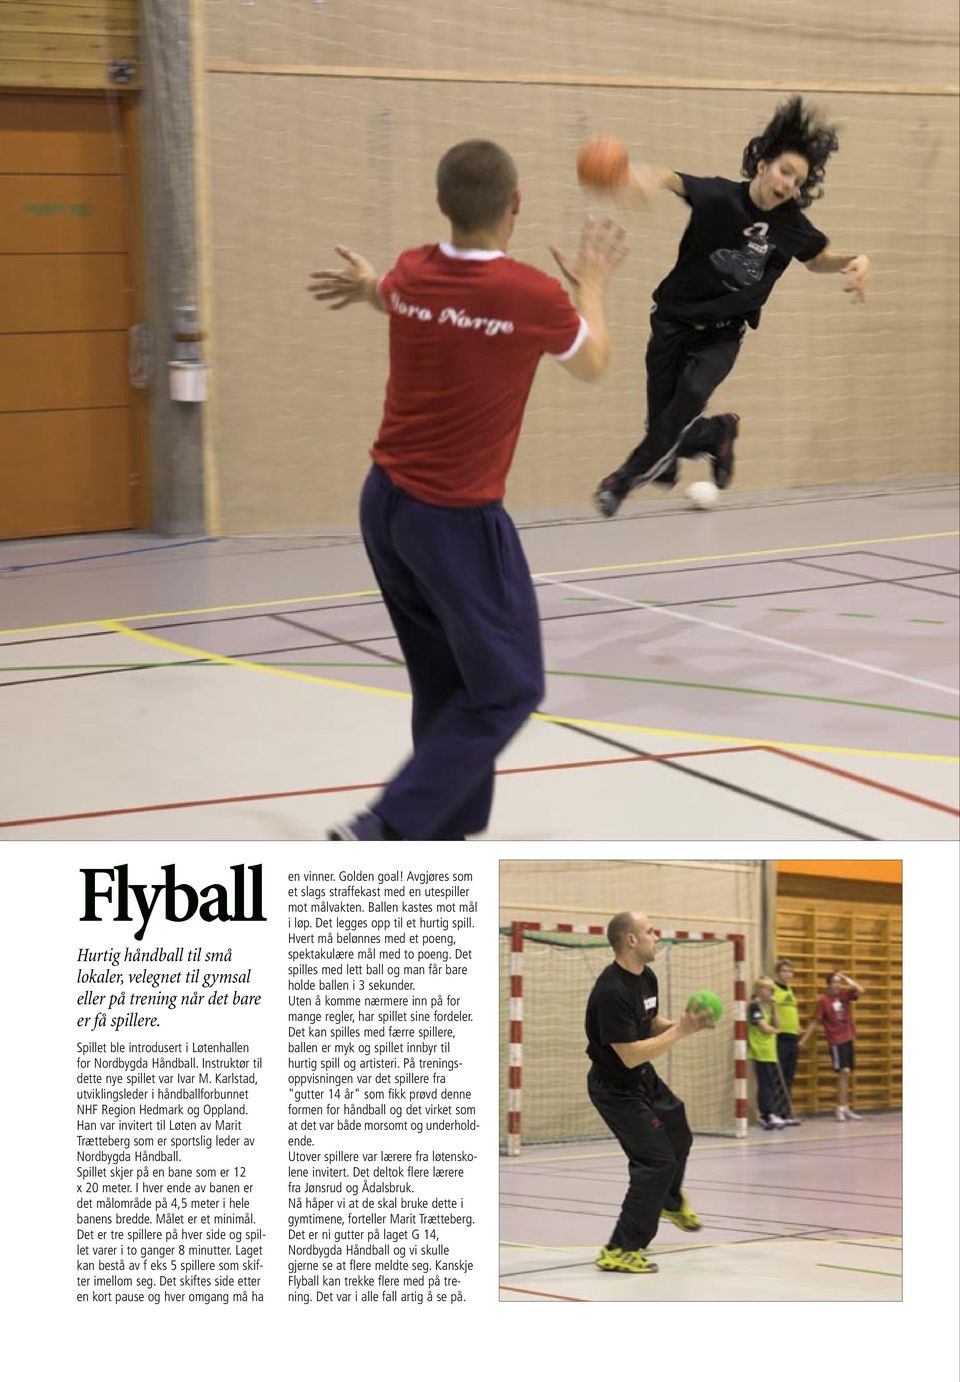 Han var invitert til Løten av Marit Trætteberg som er sportslig leder av Nordbygda Håndball. Spillet skjer på en bane som er 12 x 20 meter.